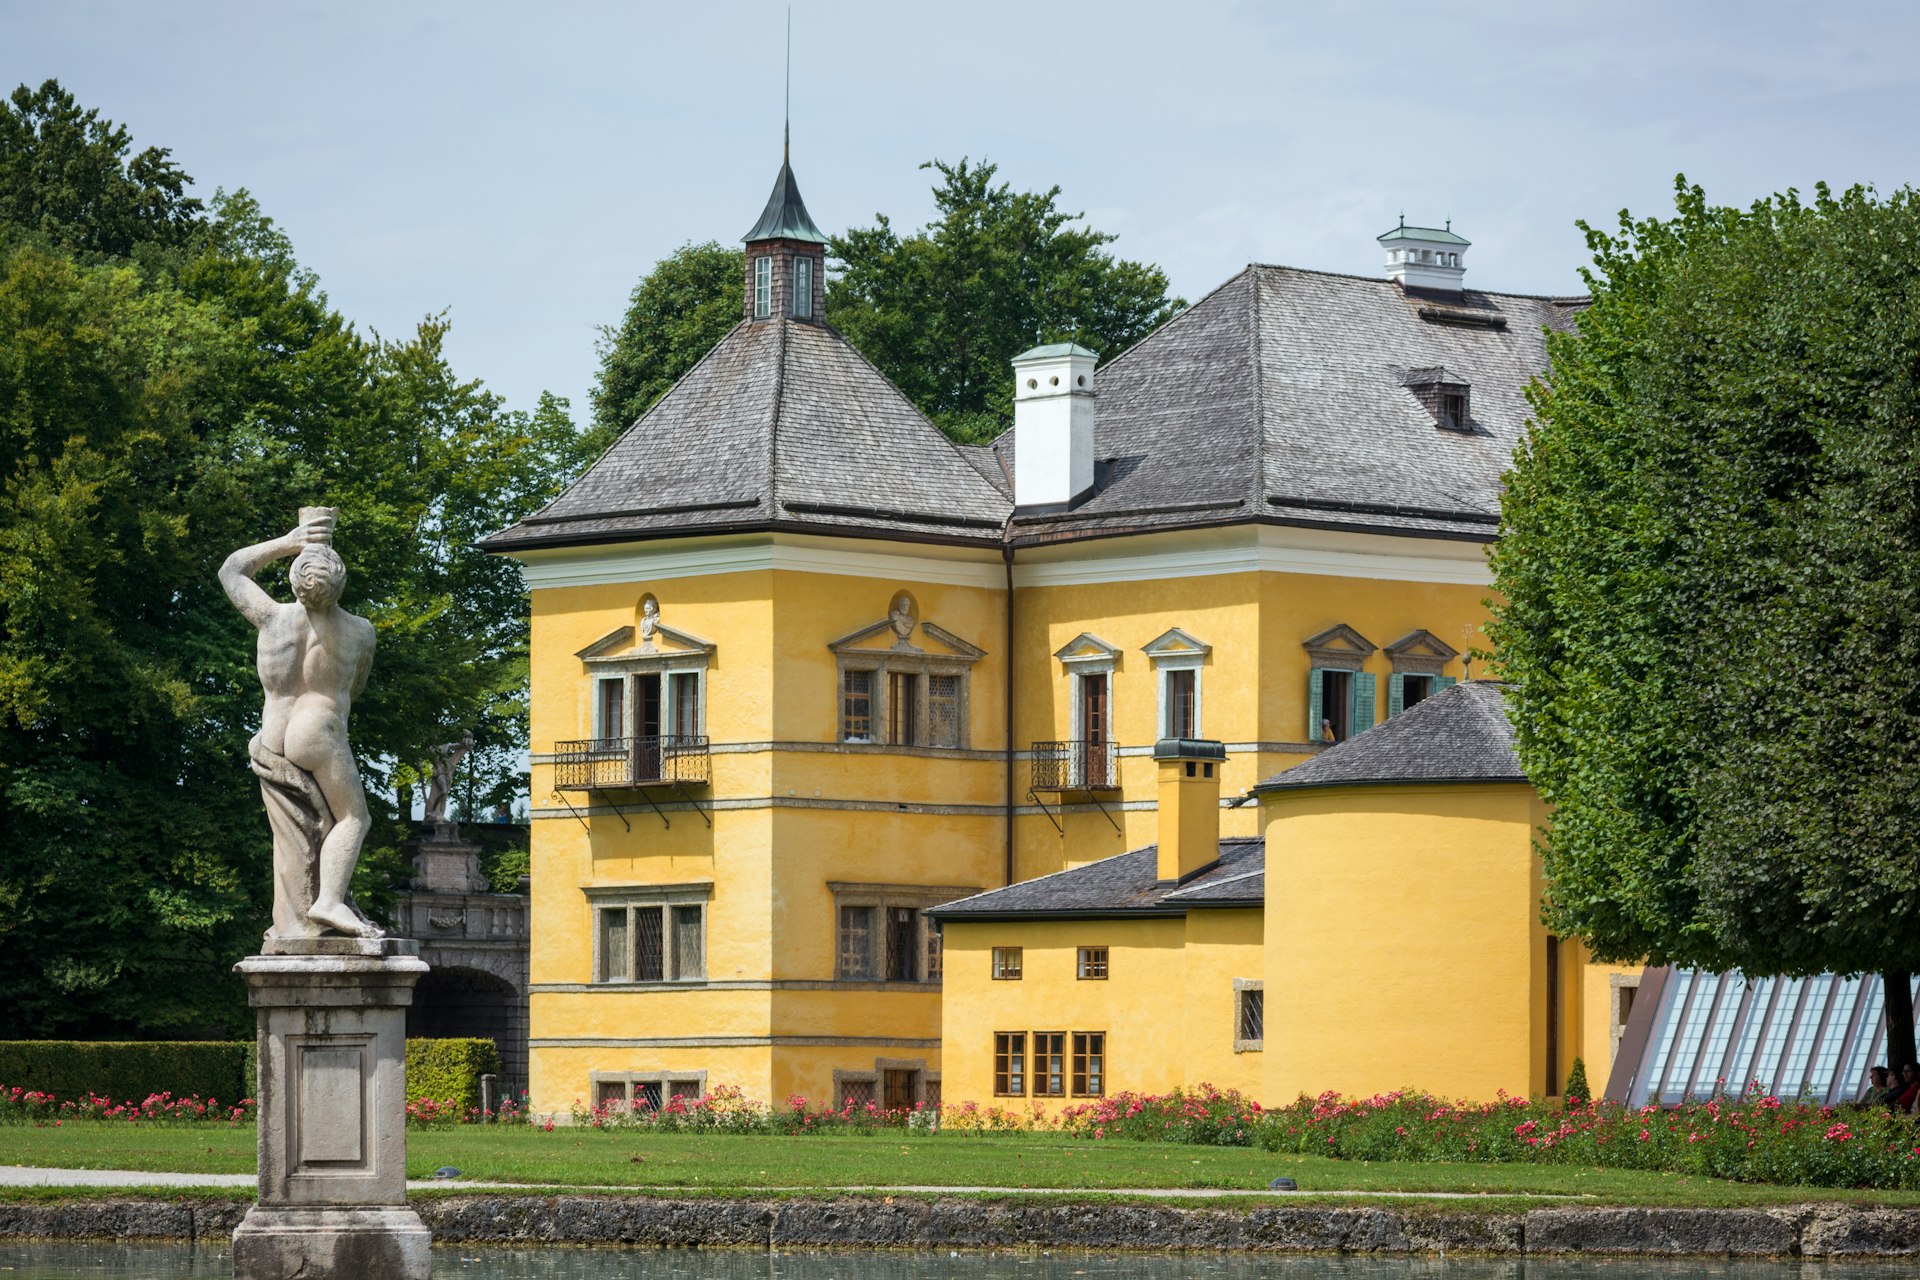 Schloss Hellbrunn seen from its adjoining gardens